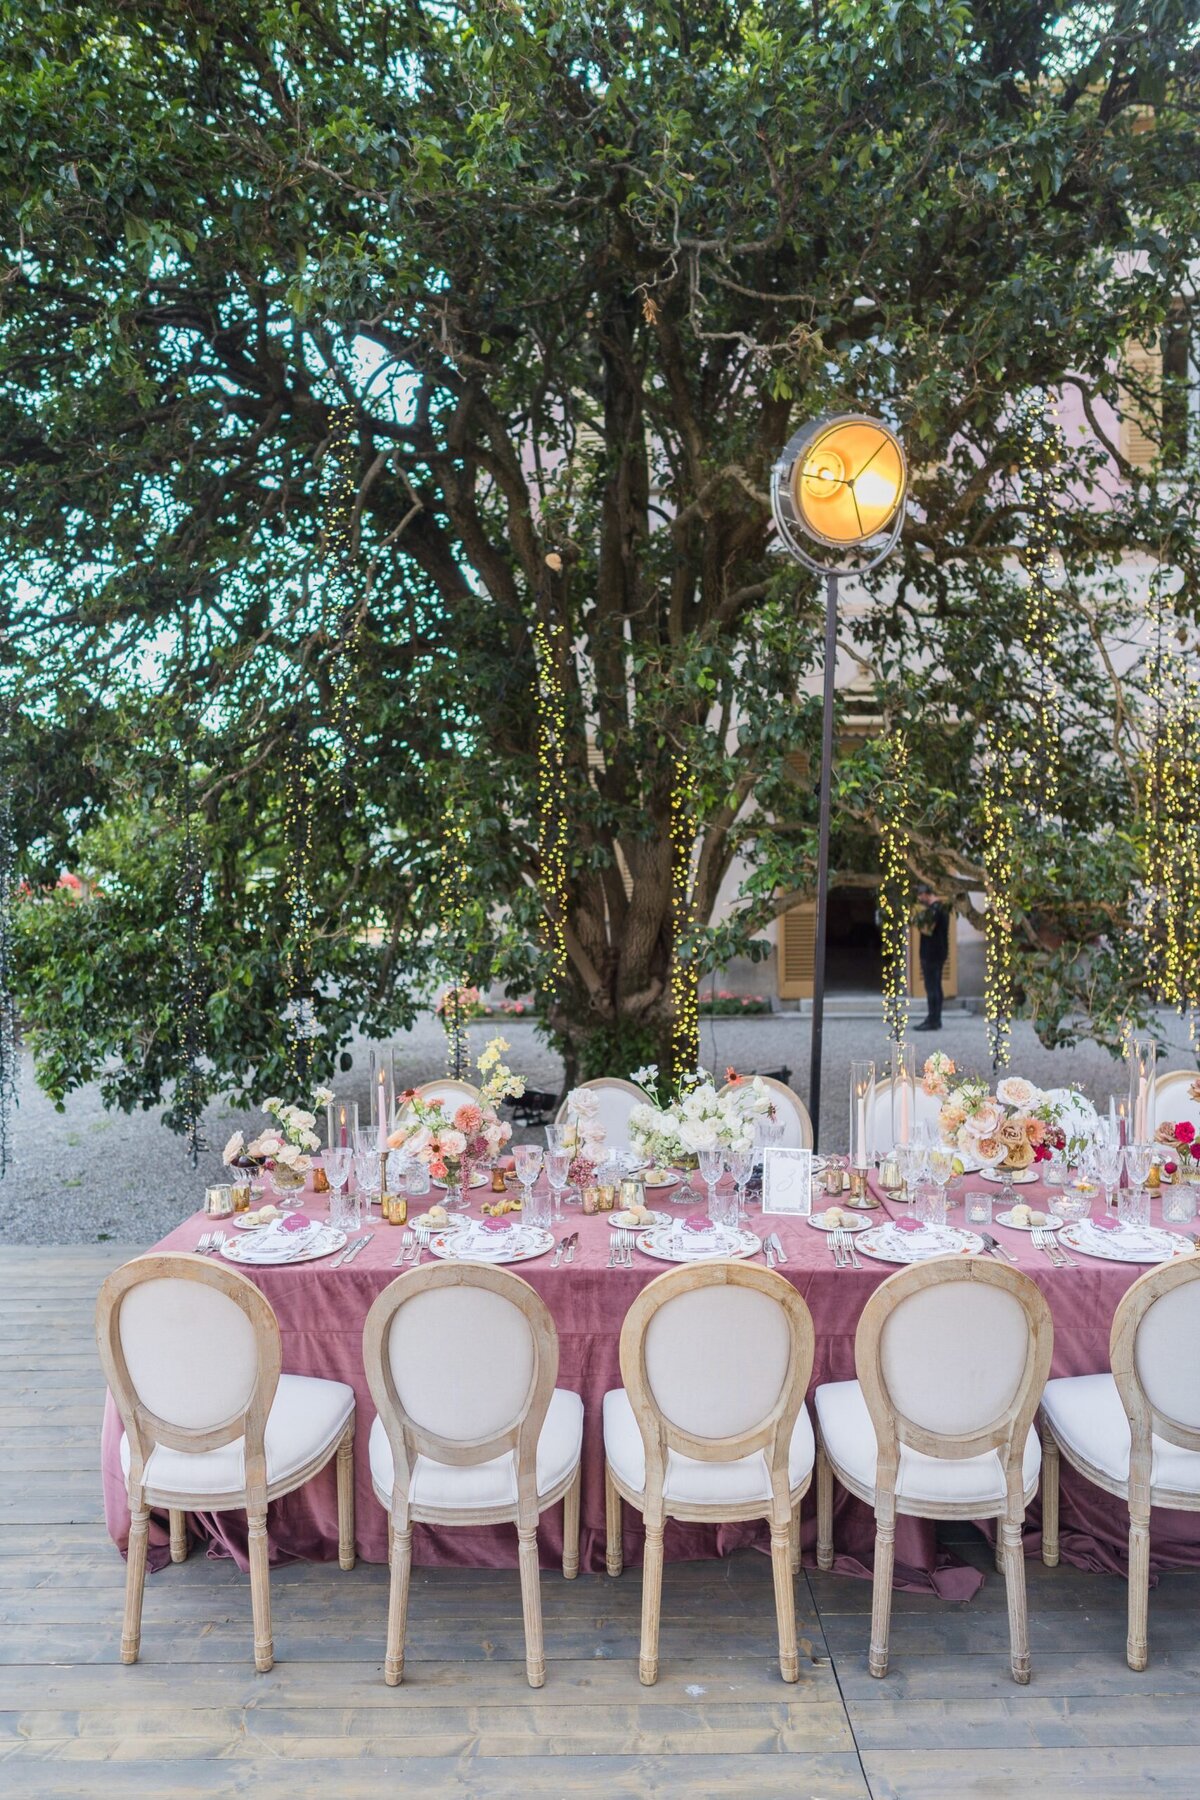 Francesco-Bognn-Luxury-wedding-photographer-Lake-como-villa-pizzo-villa-deste252-1-scaled